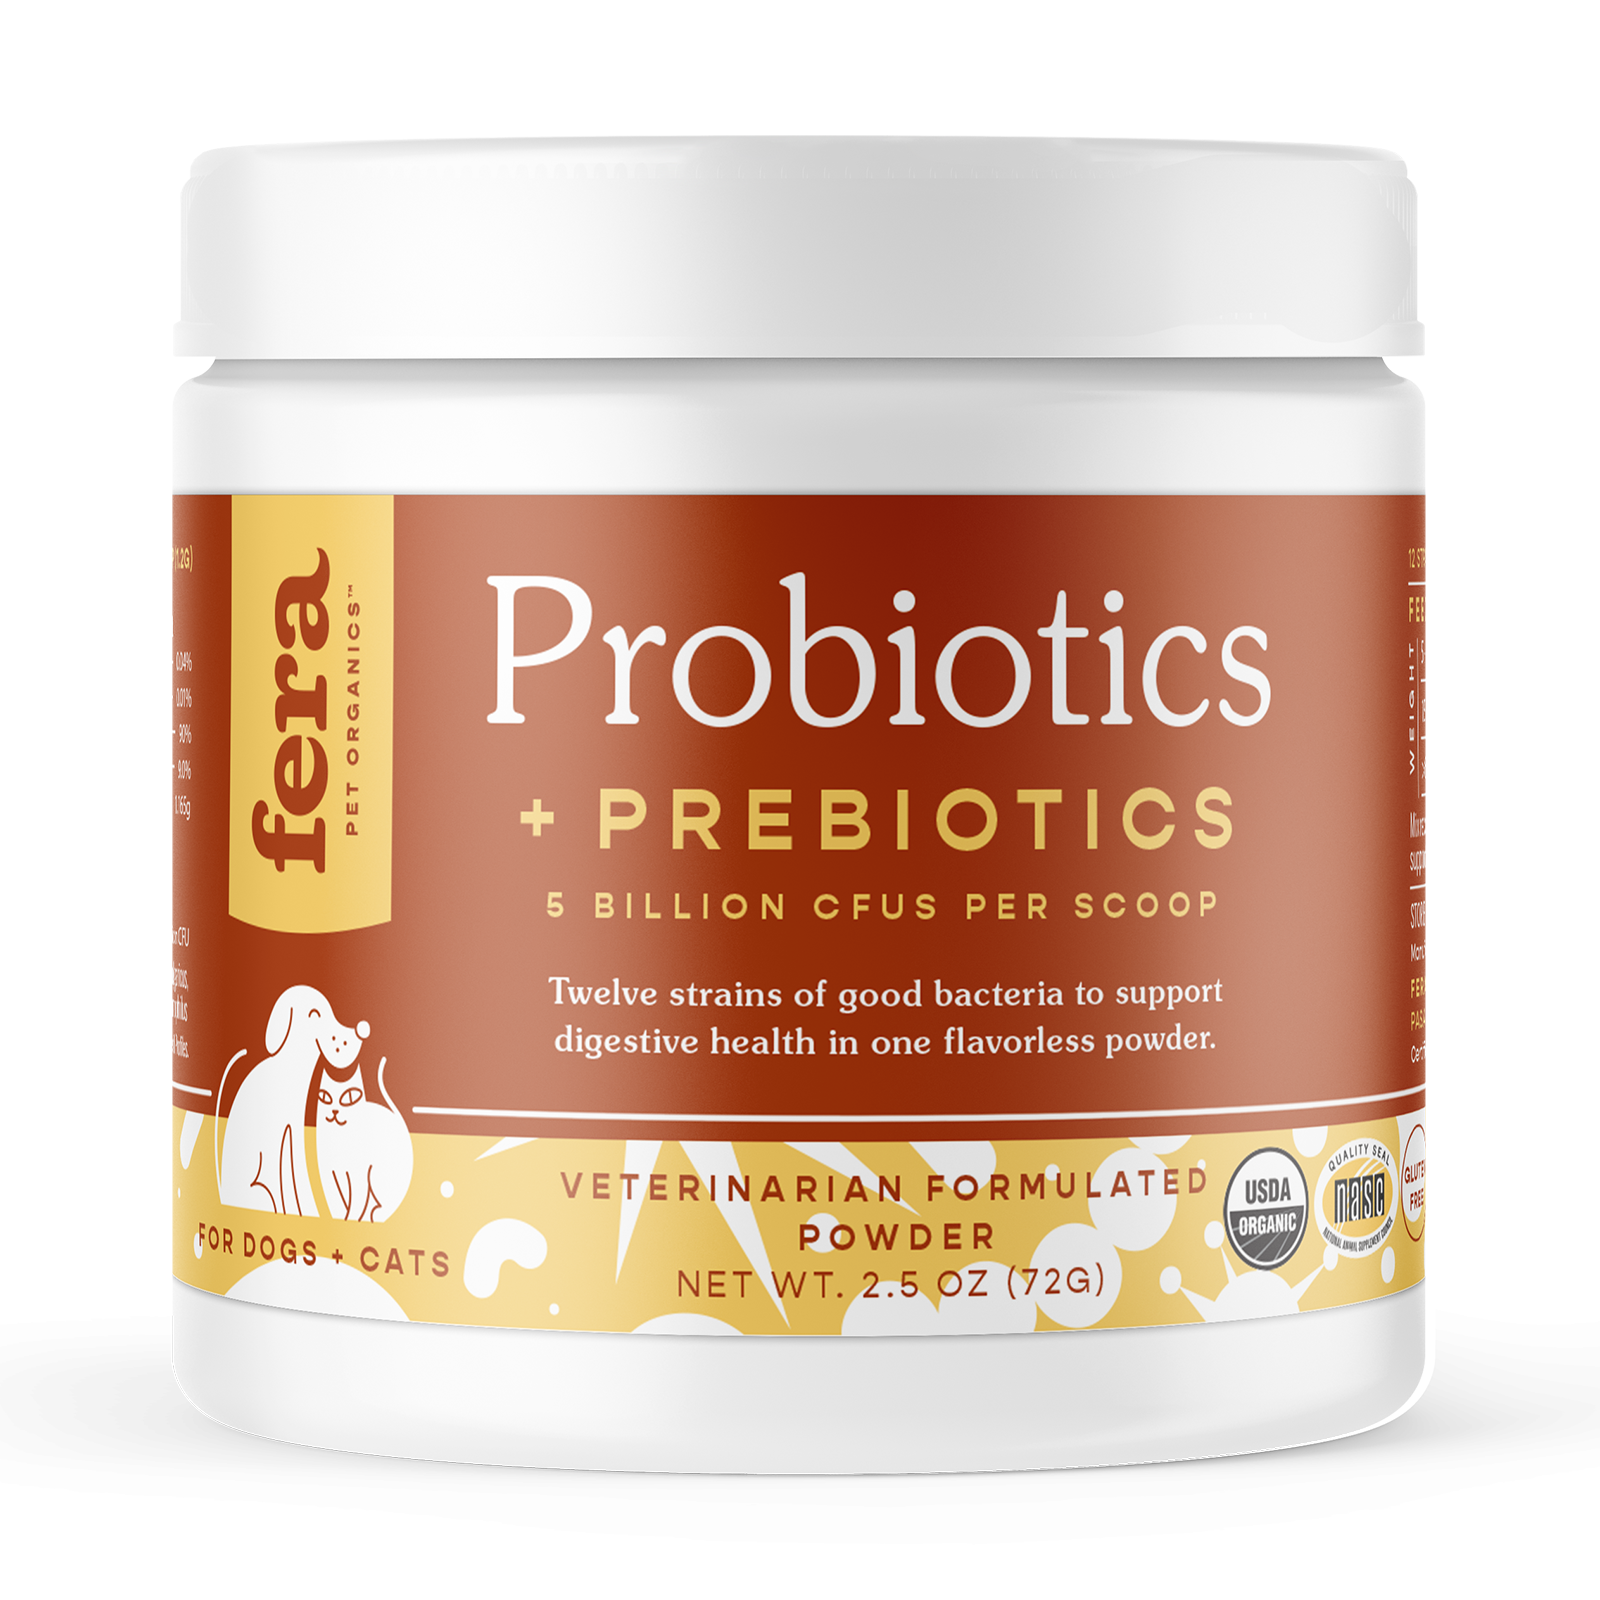 fera probiotics